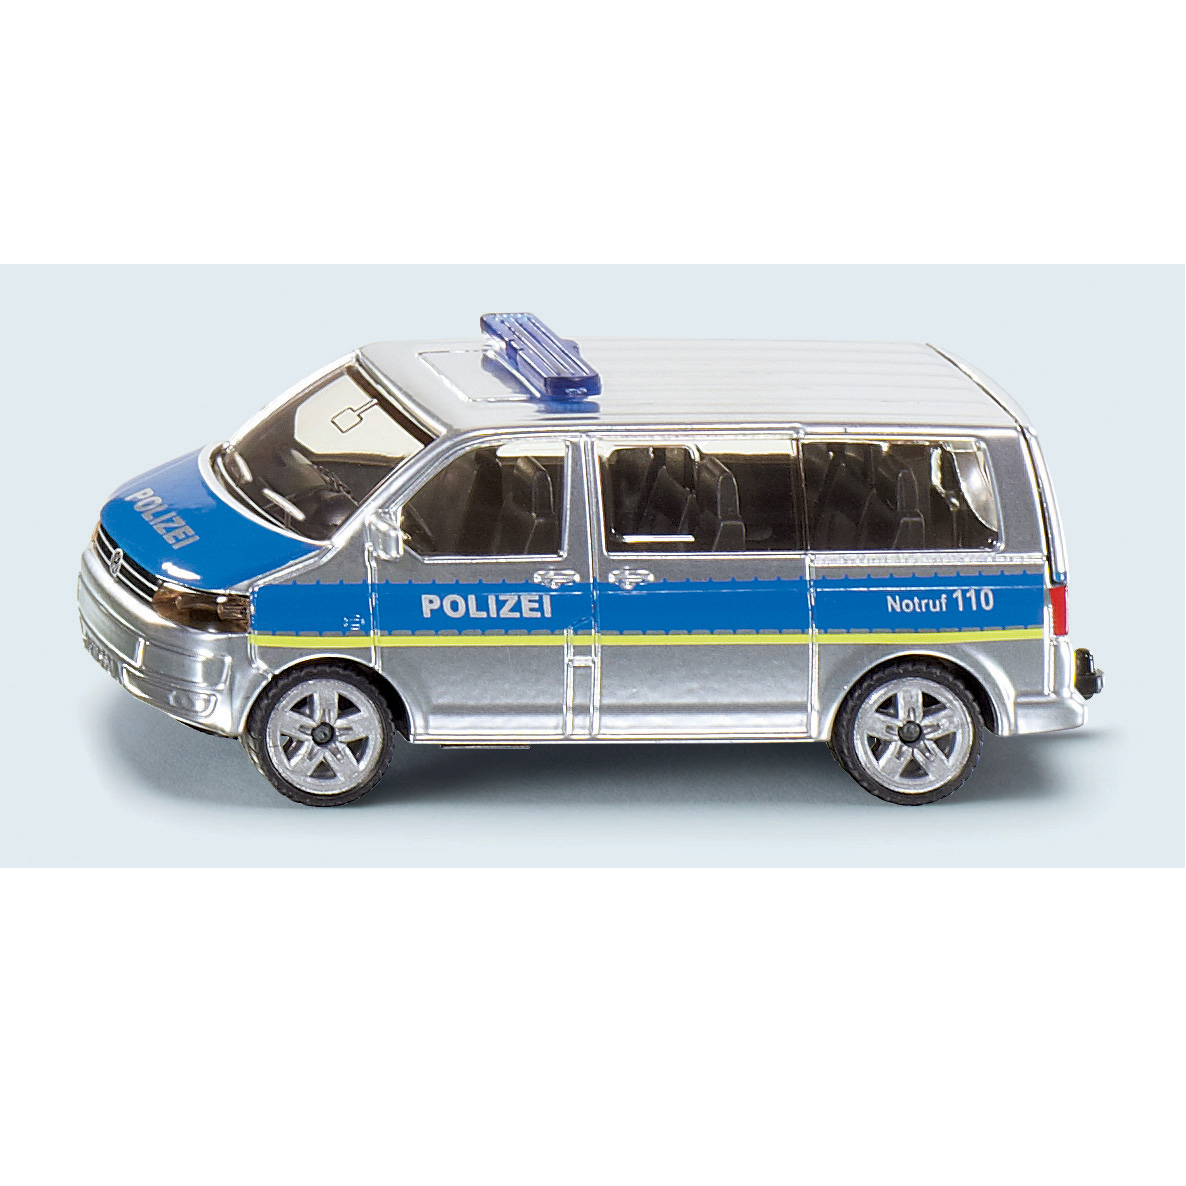 Toy cars police team van